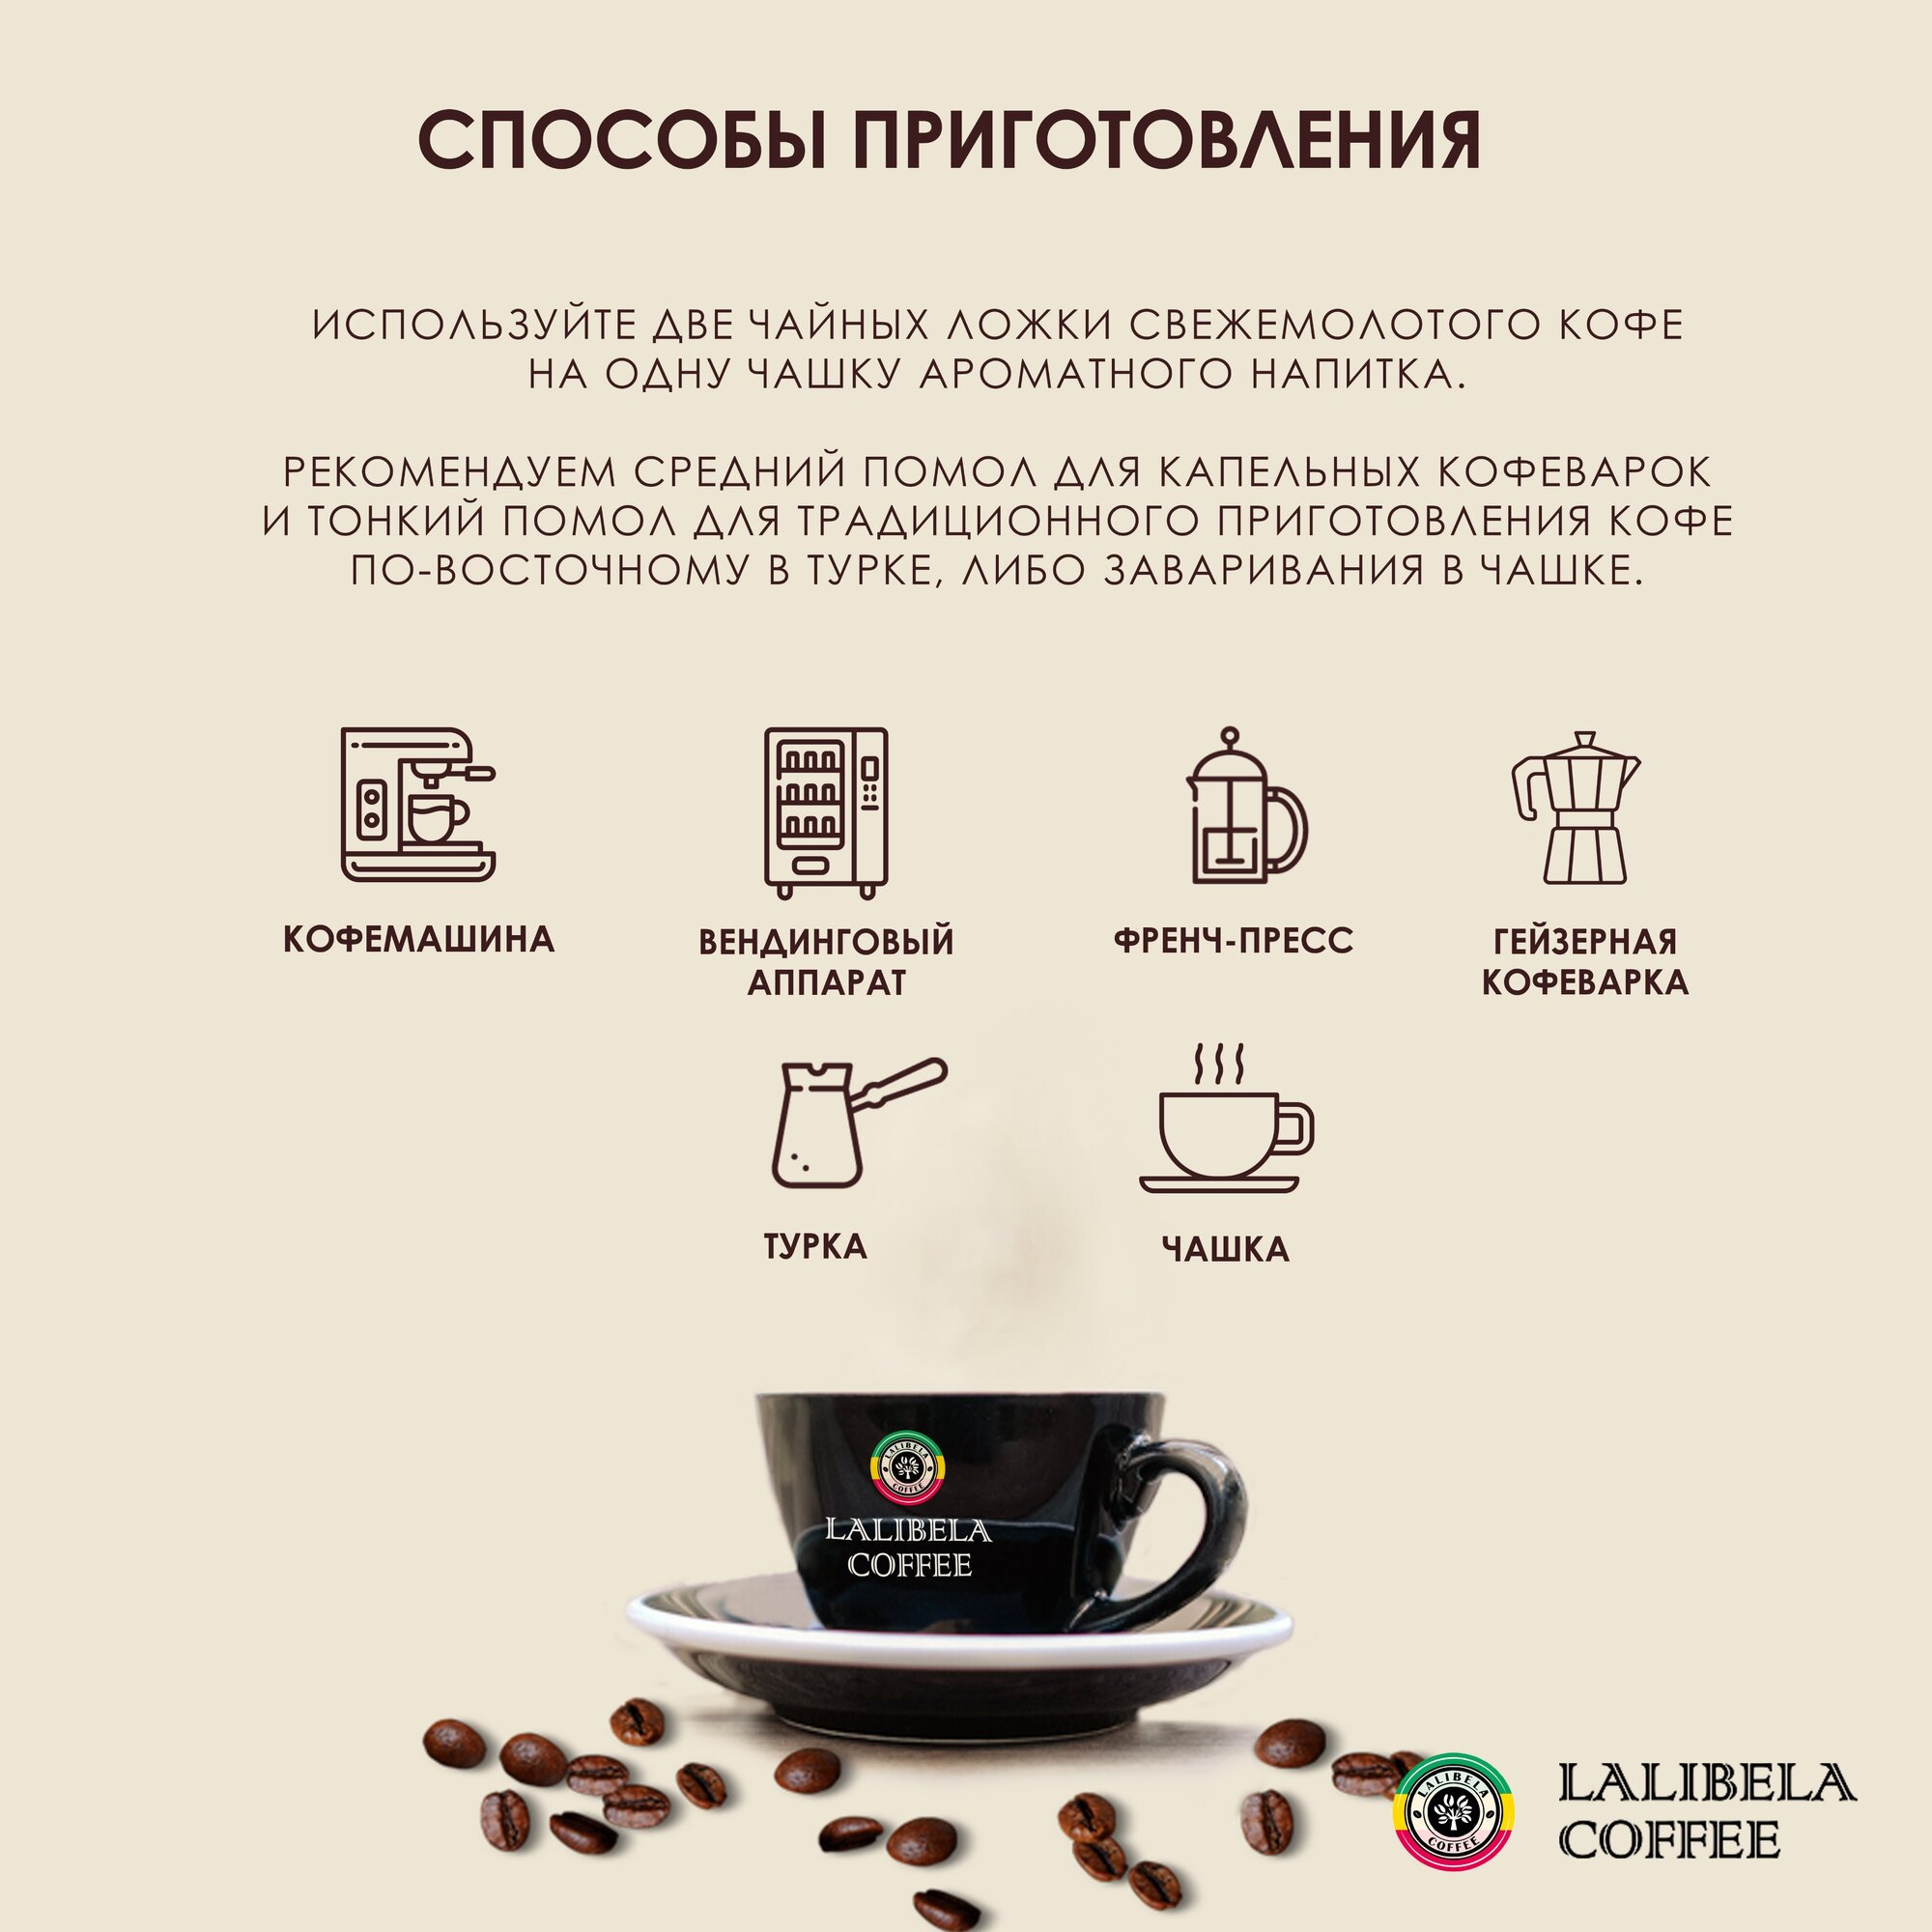 Набор кофе в зернах 1 кг LALIBELA COFFEE Classic / Espresso, (2 шт. по 500 гр)